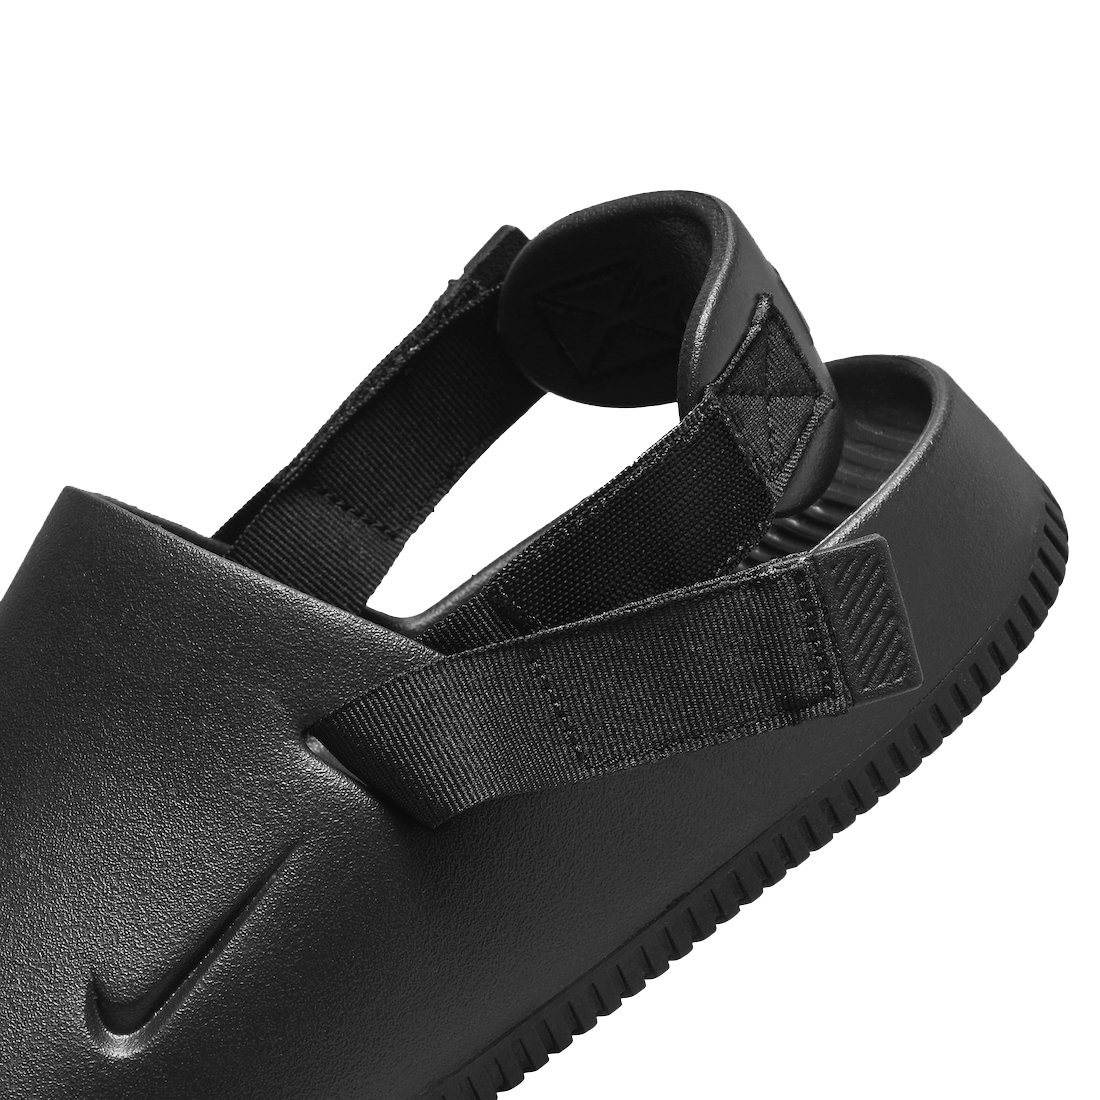 Nike Calm Mule Black FD5130-001